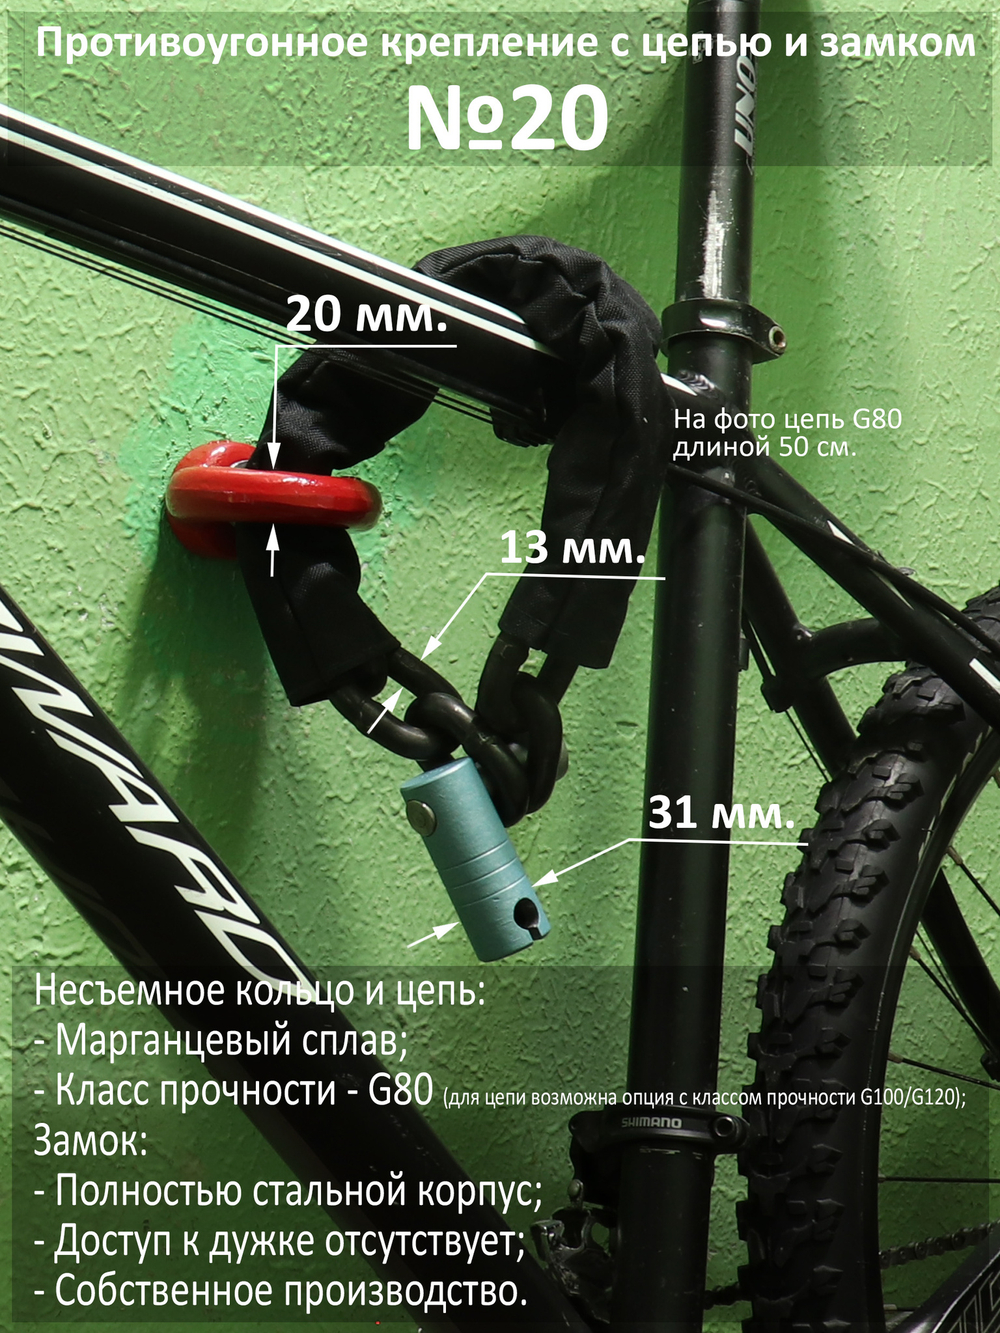 Противоугонный комплект для велосипеда №20